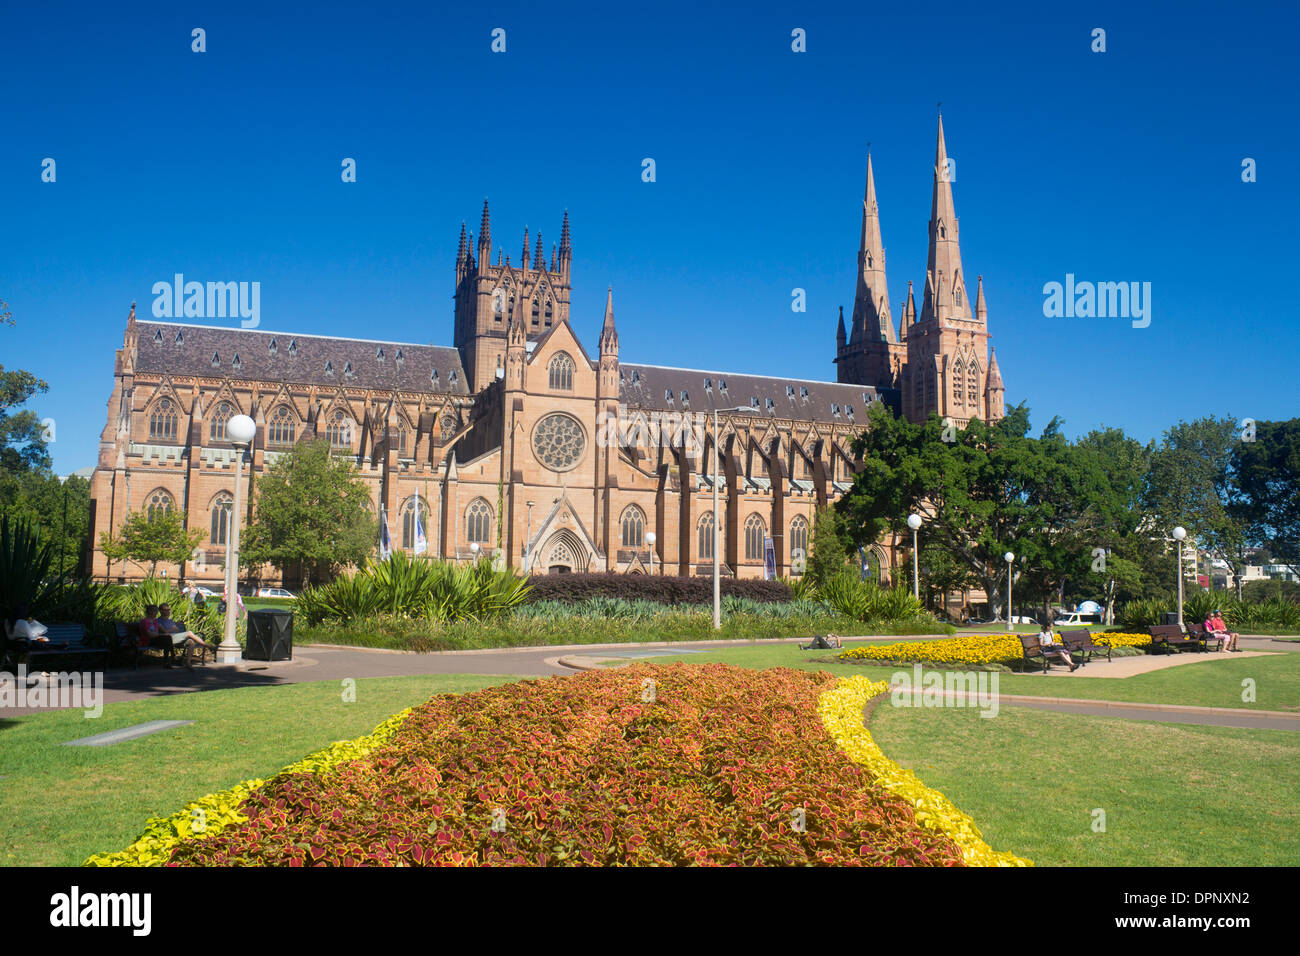 St Mary's cathédrale catholique romaine de Hyde Park Le domaine Sydney NSW Australie Nouvelle Galles du Sud Banque D'Images